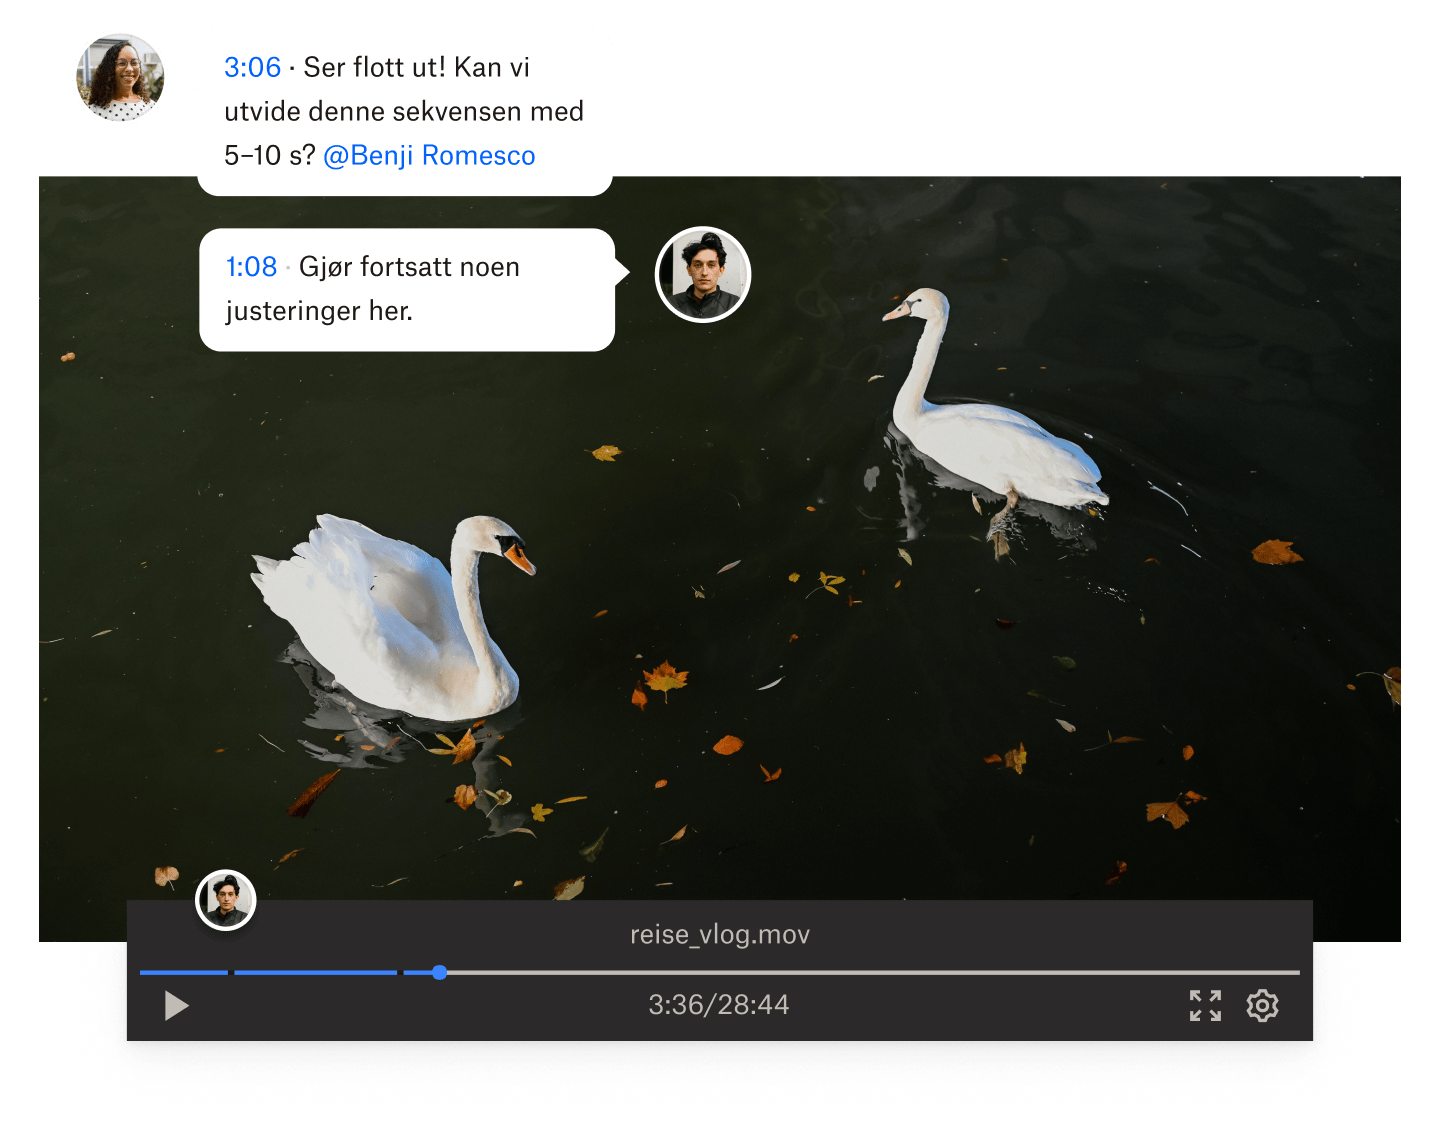 Et stillbilde fra en video av to svaner som svømmer i vann med tidsstemplede kommentarer over videoen